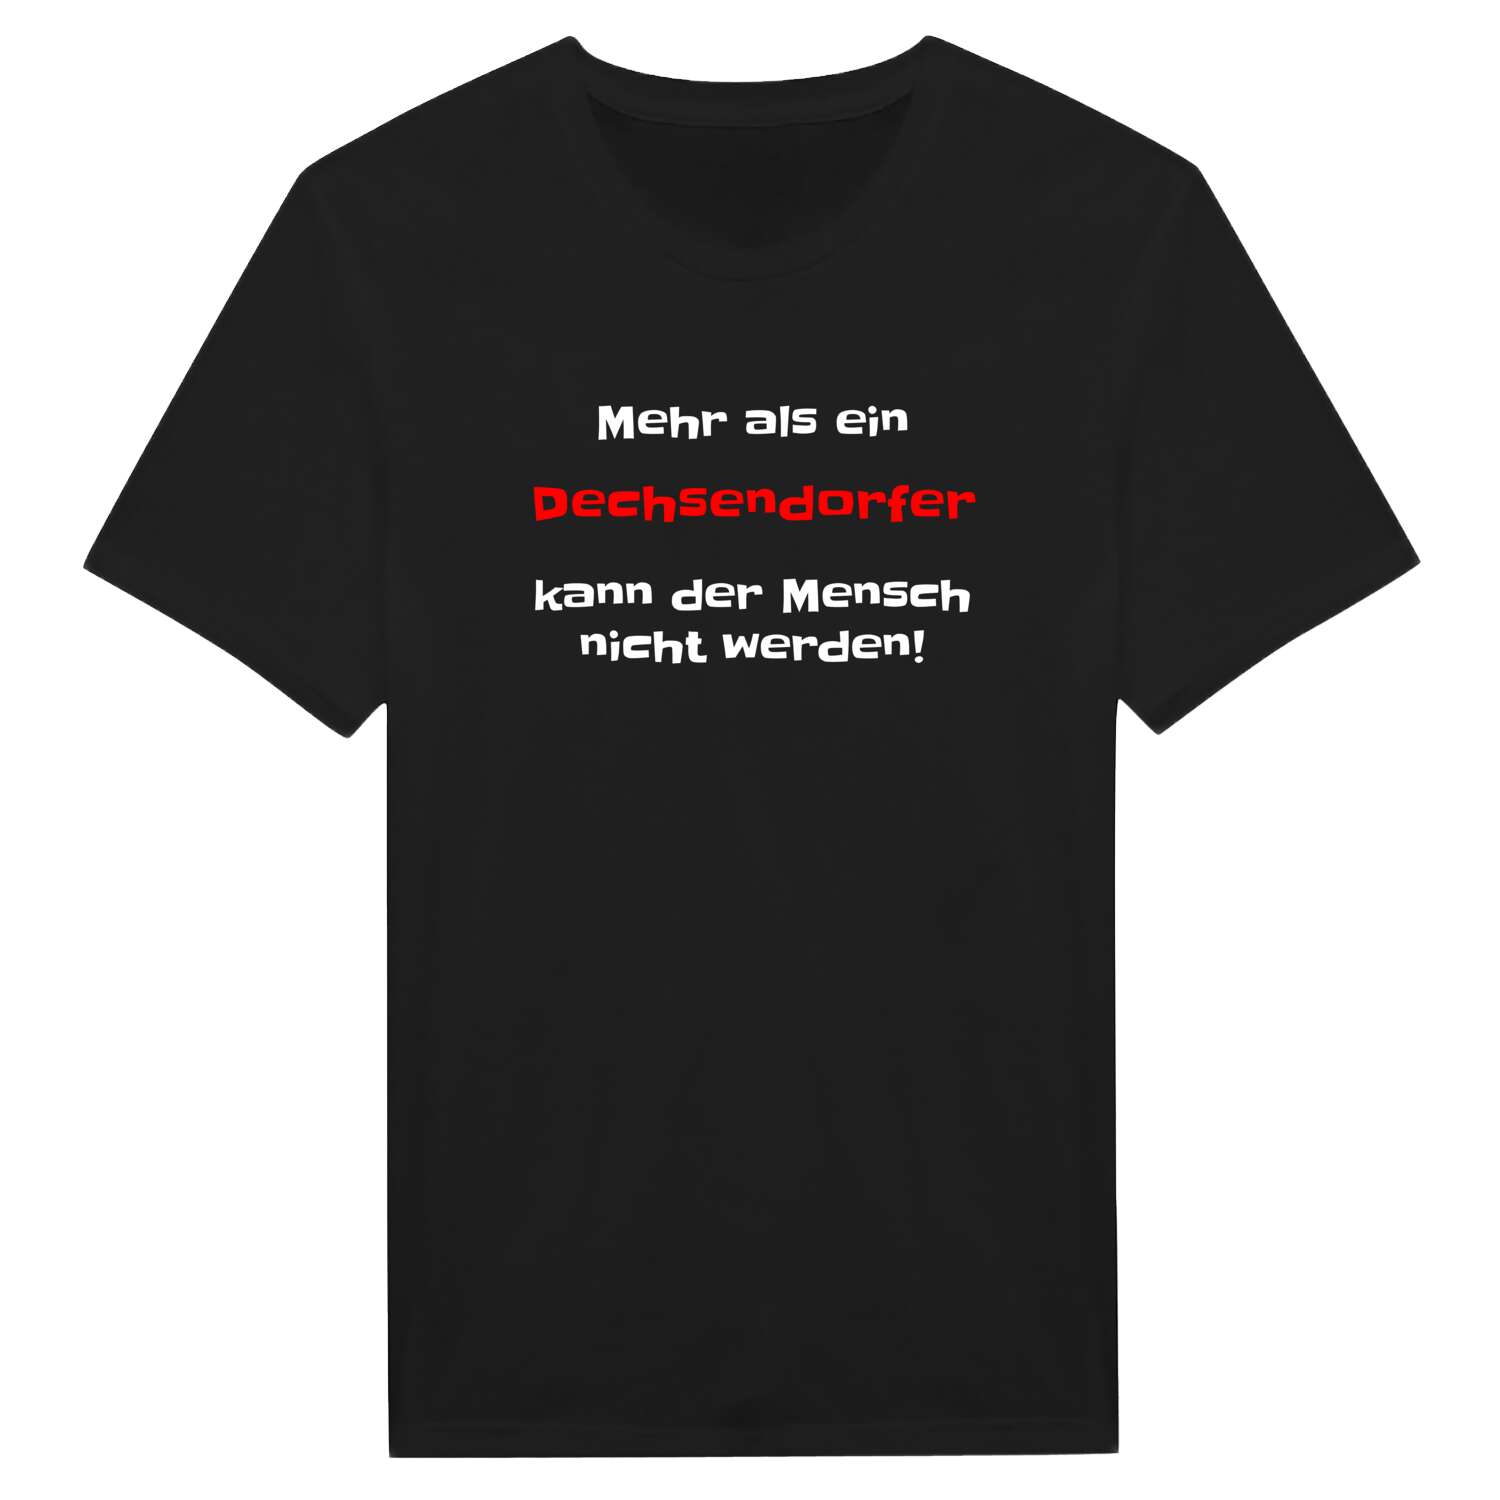 Dechsendorf T-Shirt »Mehr als ein«